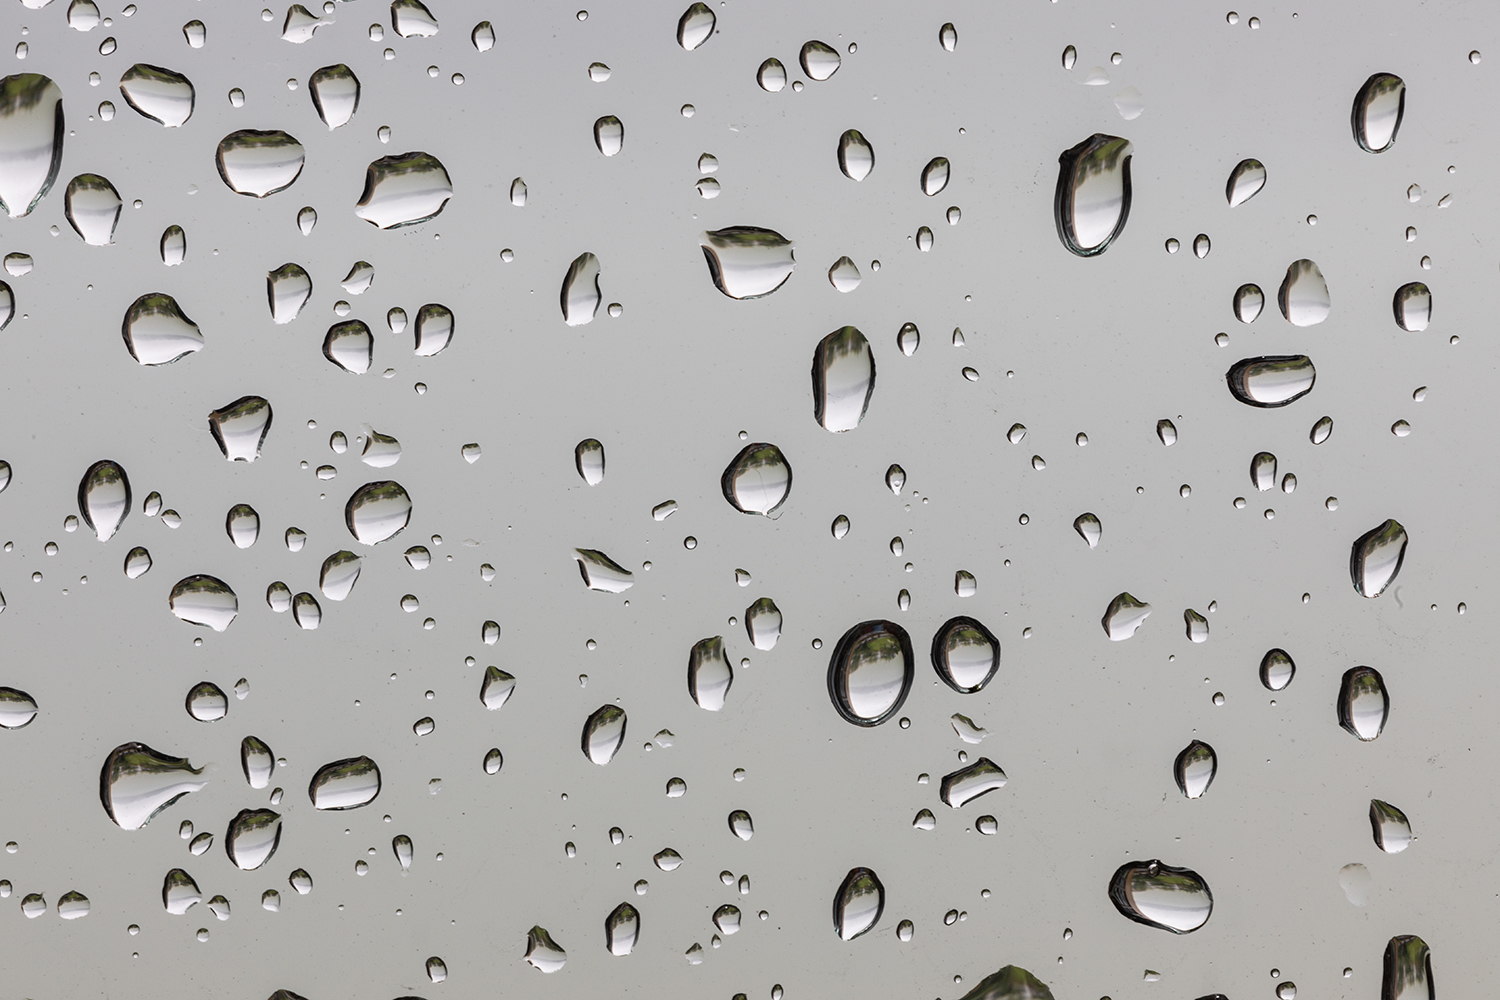 雨水玻璃壁纸图片